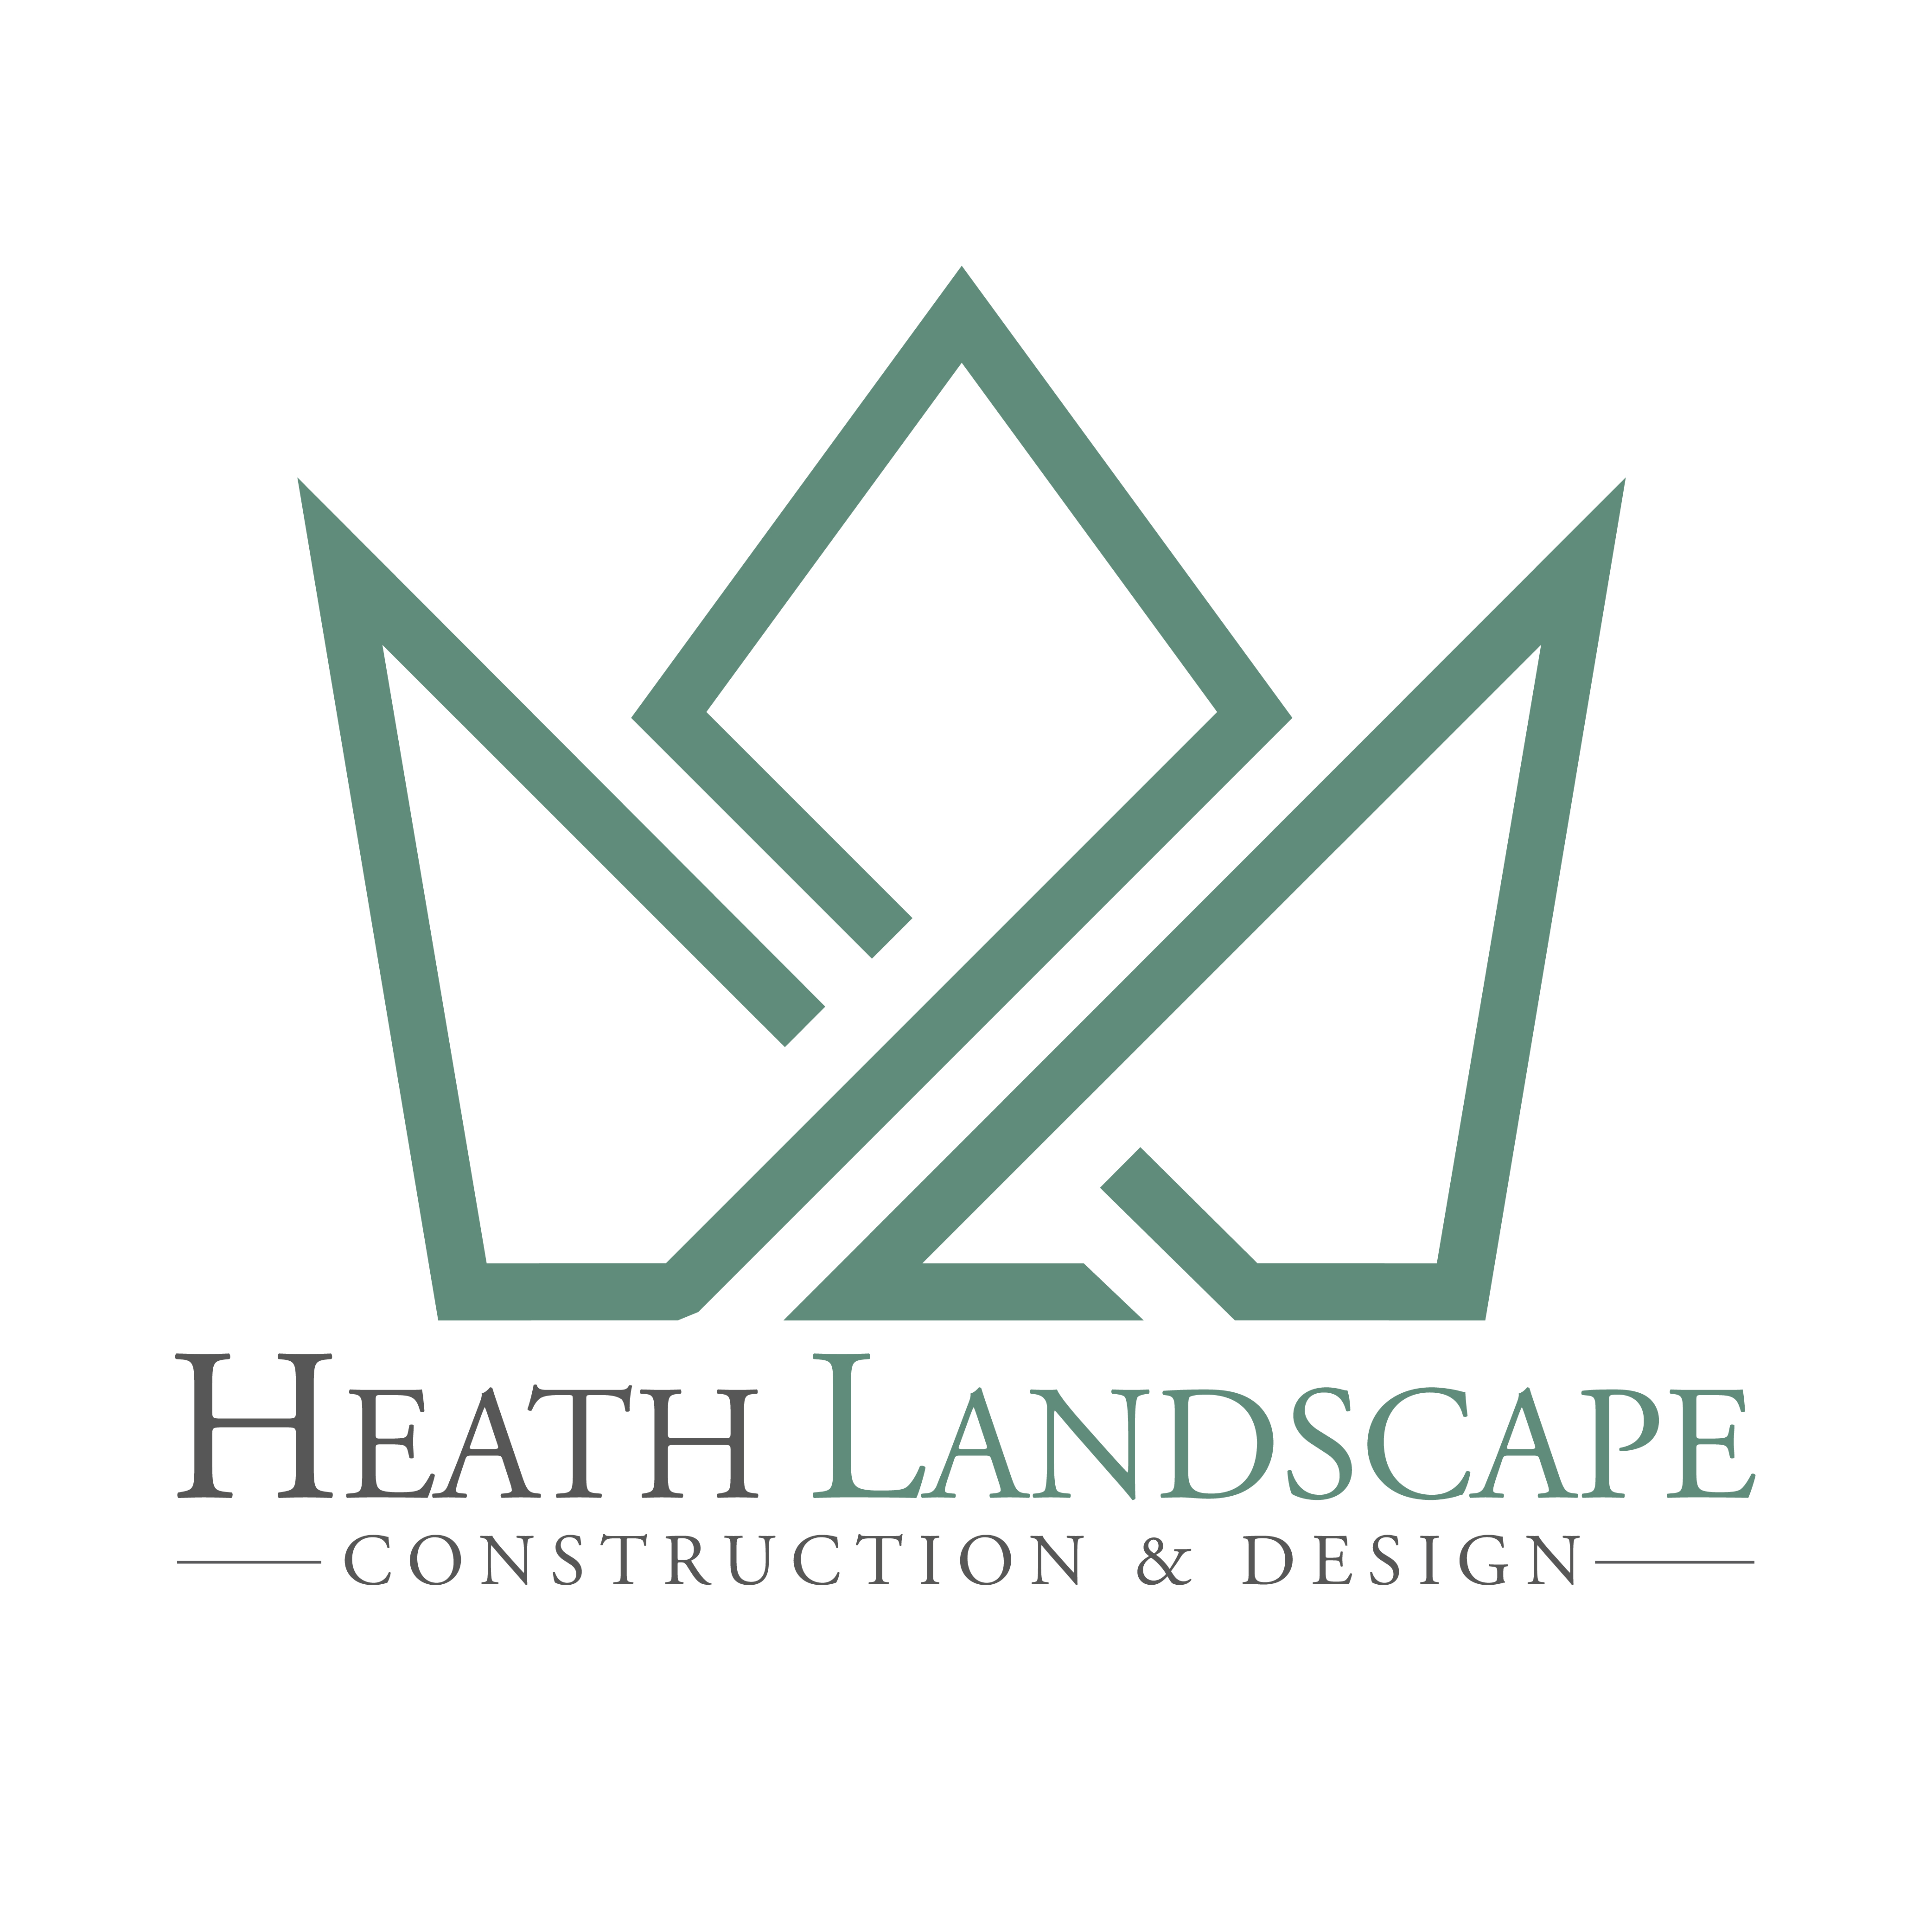 Heath Landscape Construction & Design